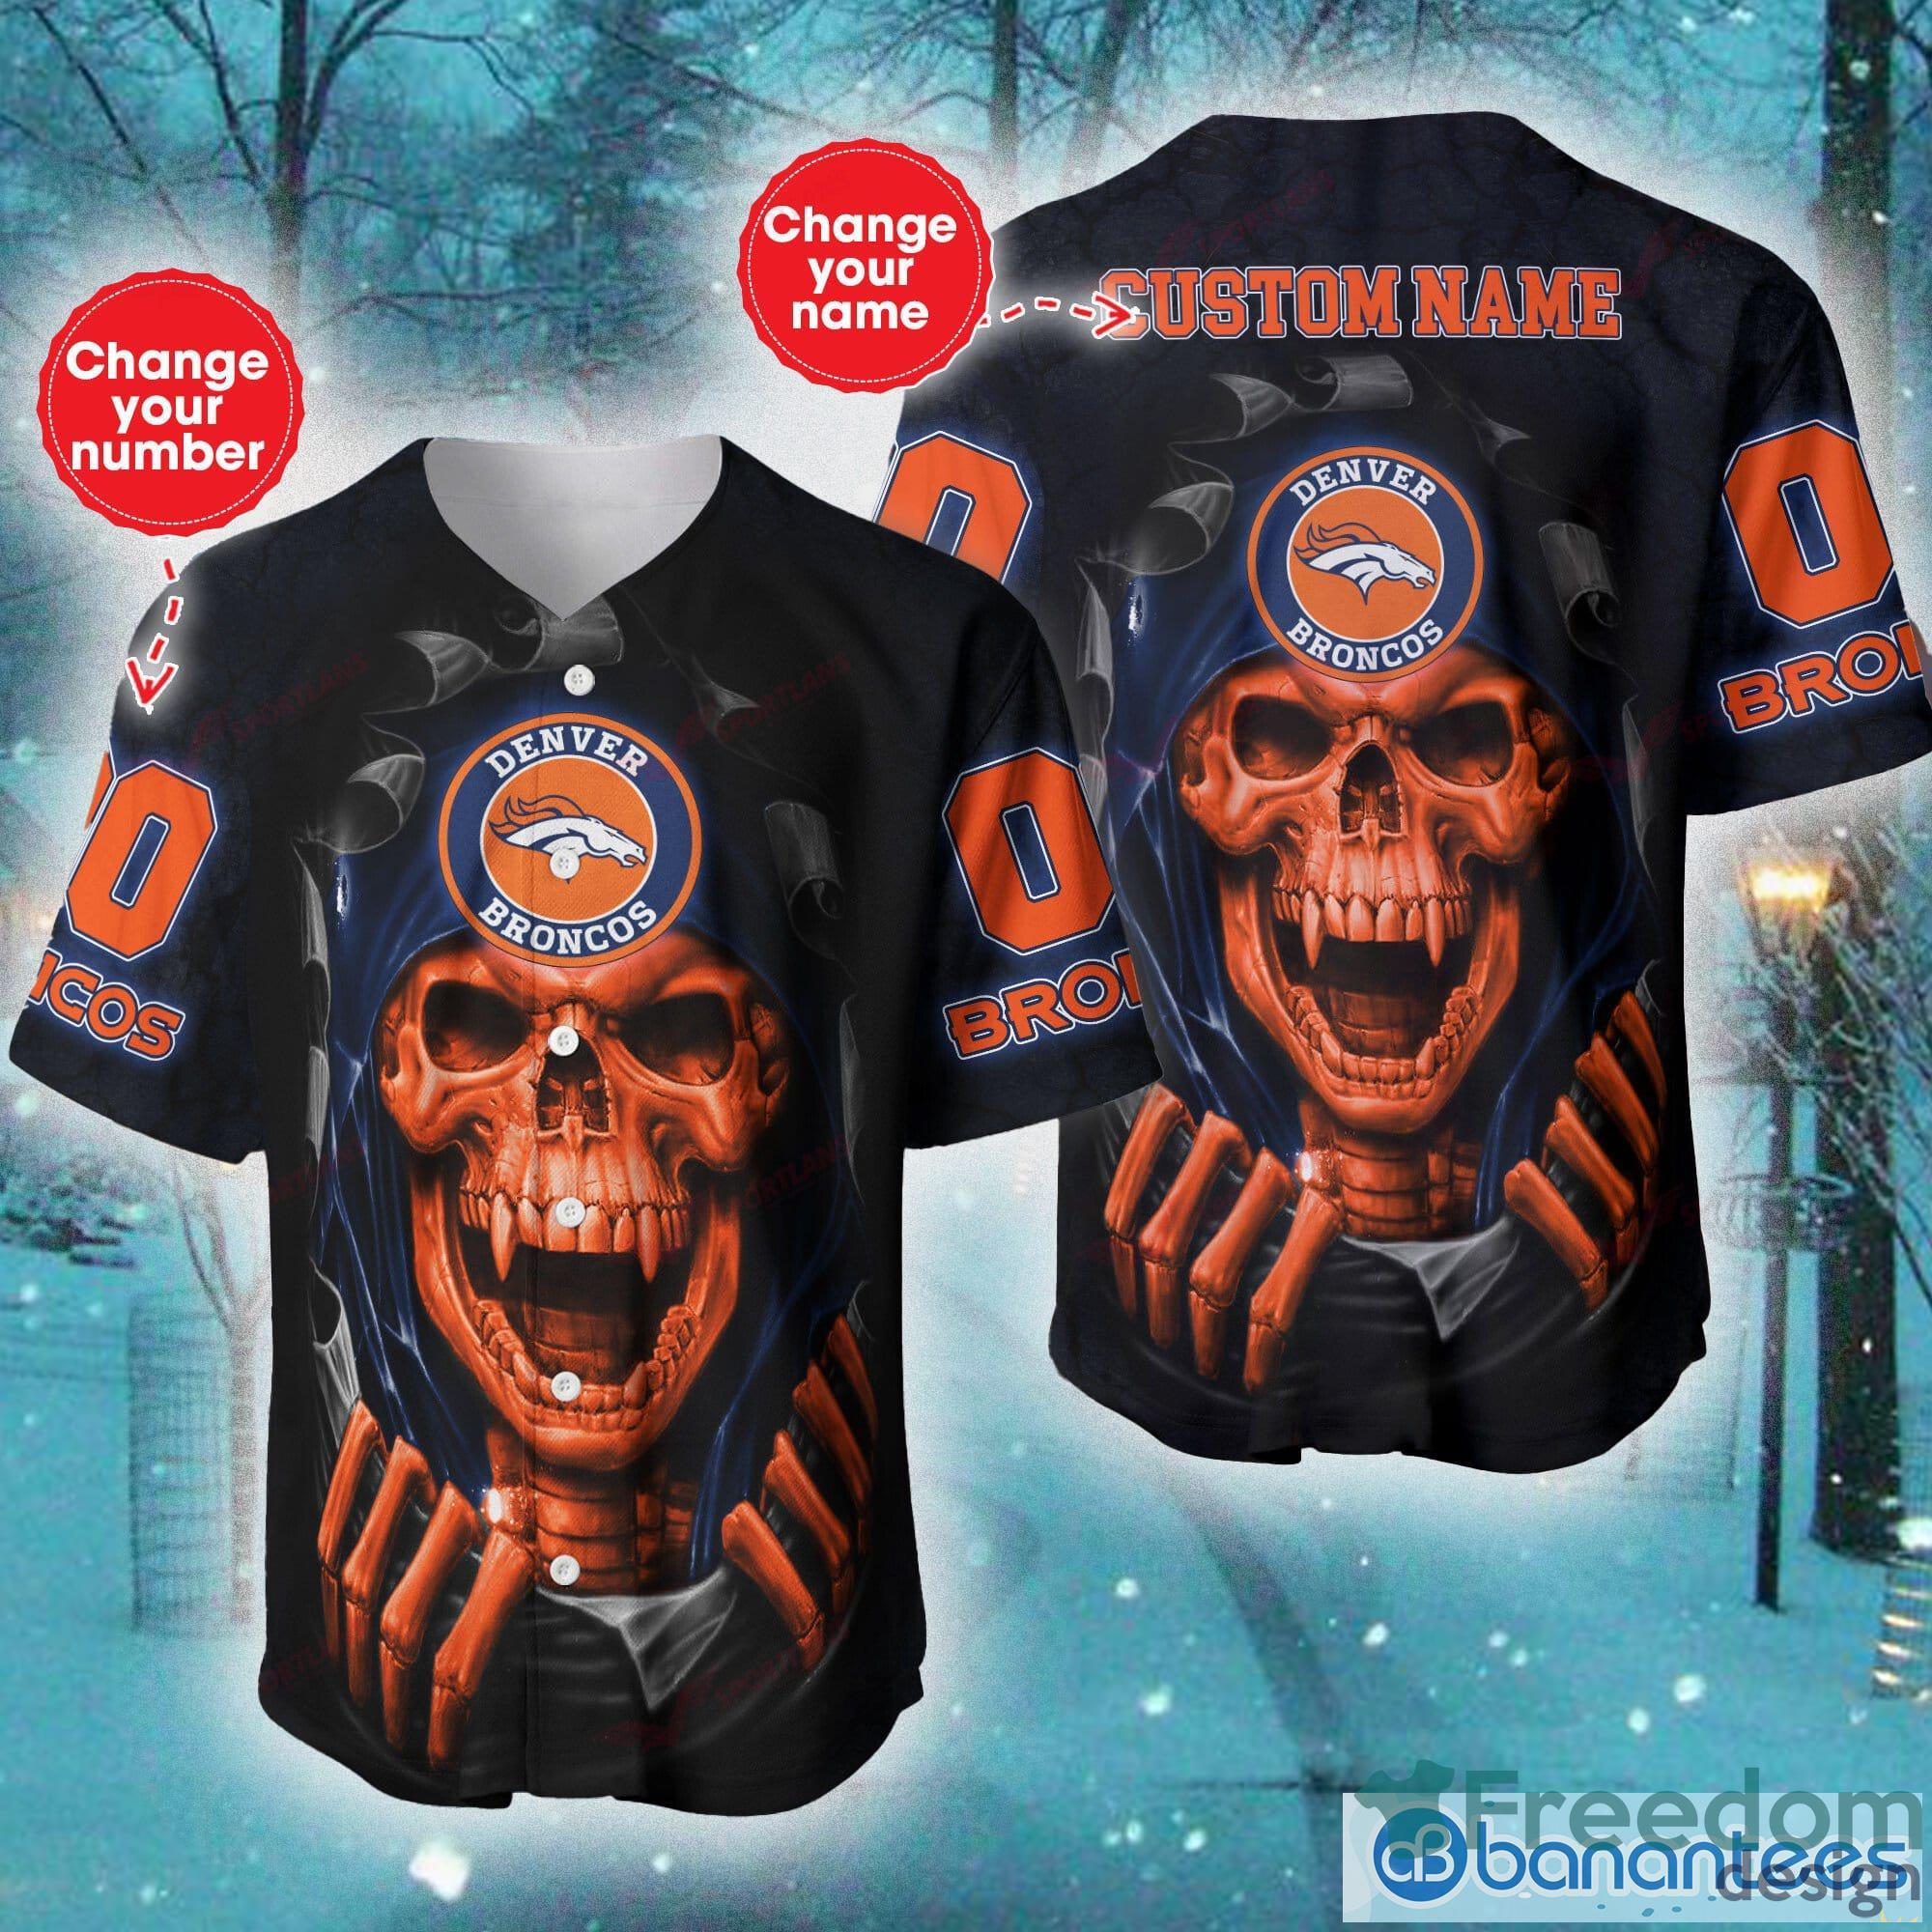 Denver Broncos NFL Baseball Jersey Shirt Skull Custom Number And Name For  Fans Gift Halloween - Freedomdesign